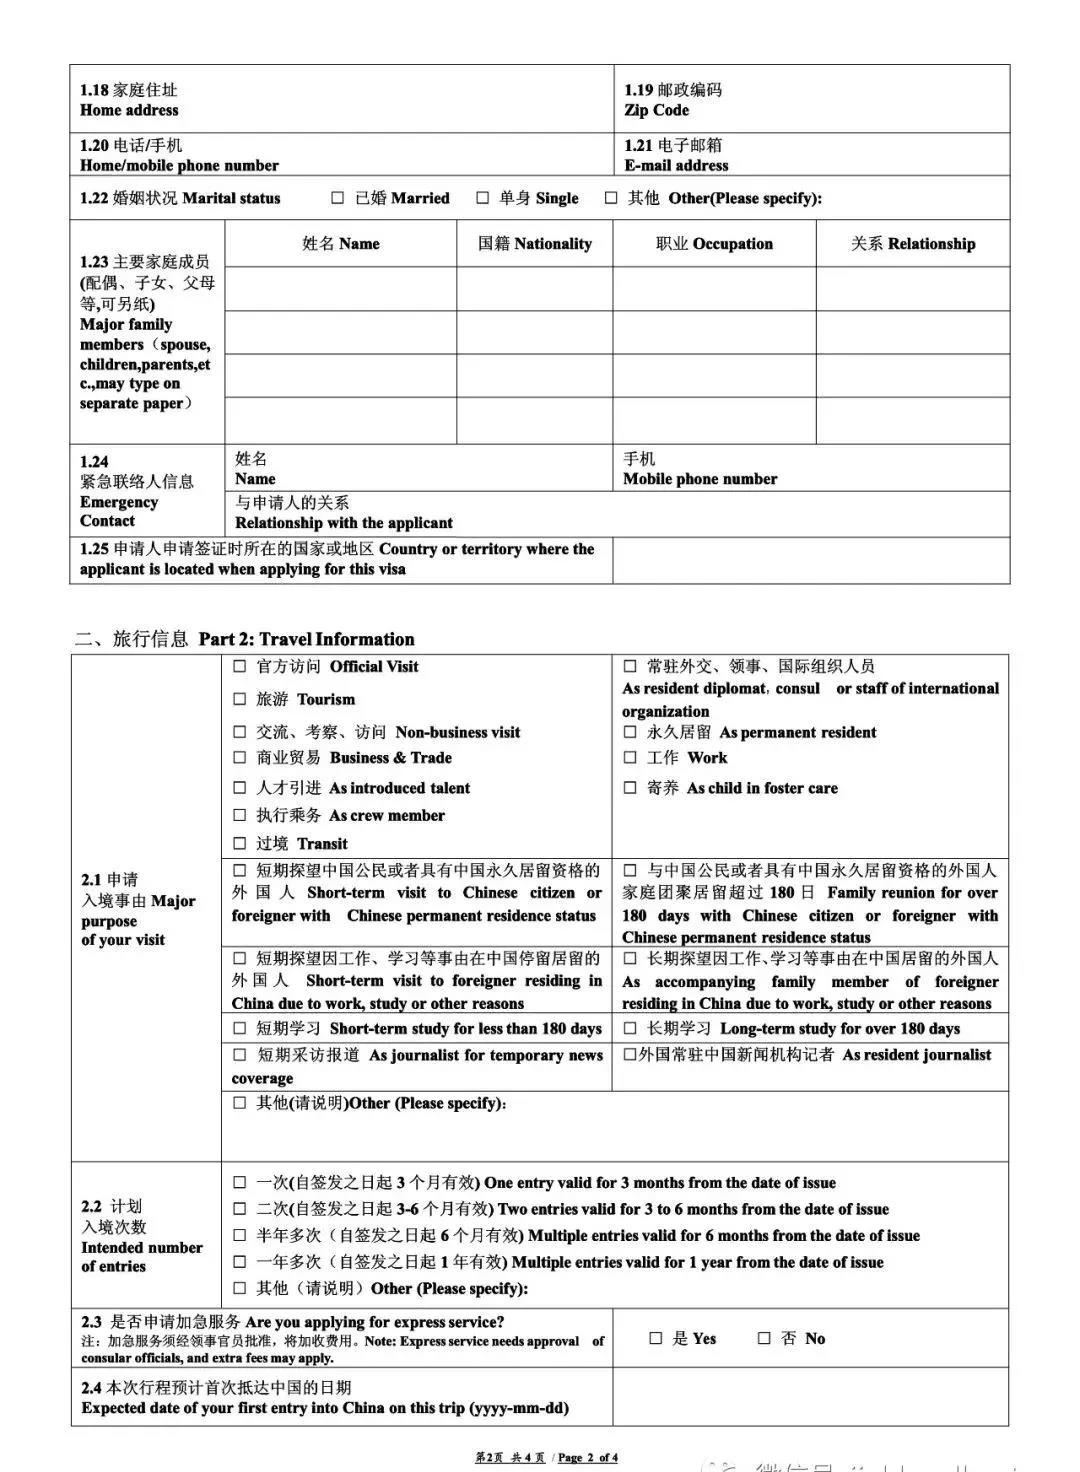 China visa application form 2